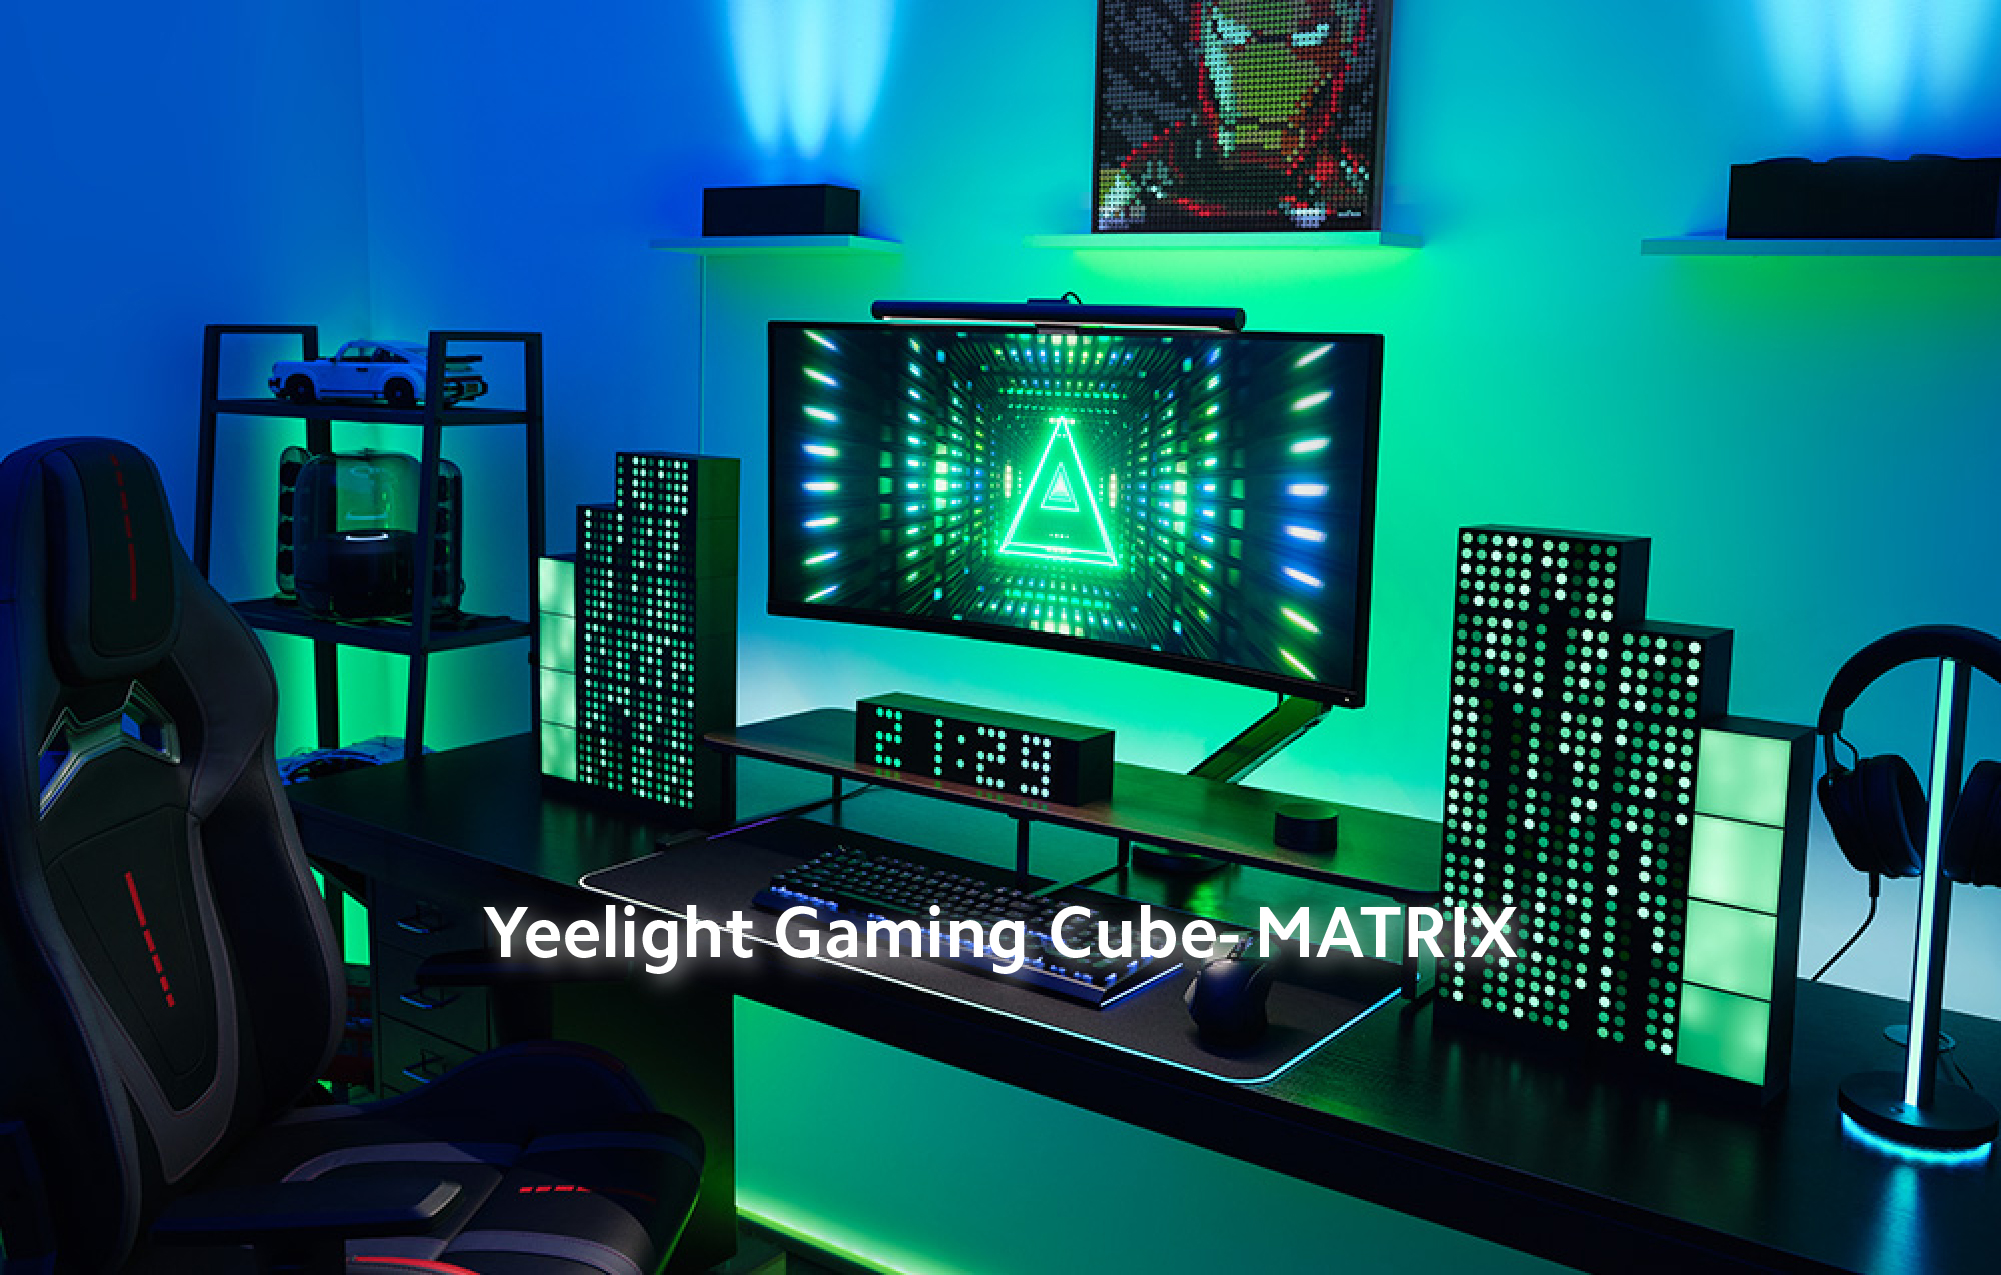 Yeelight Gaming Cube- MATRIX